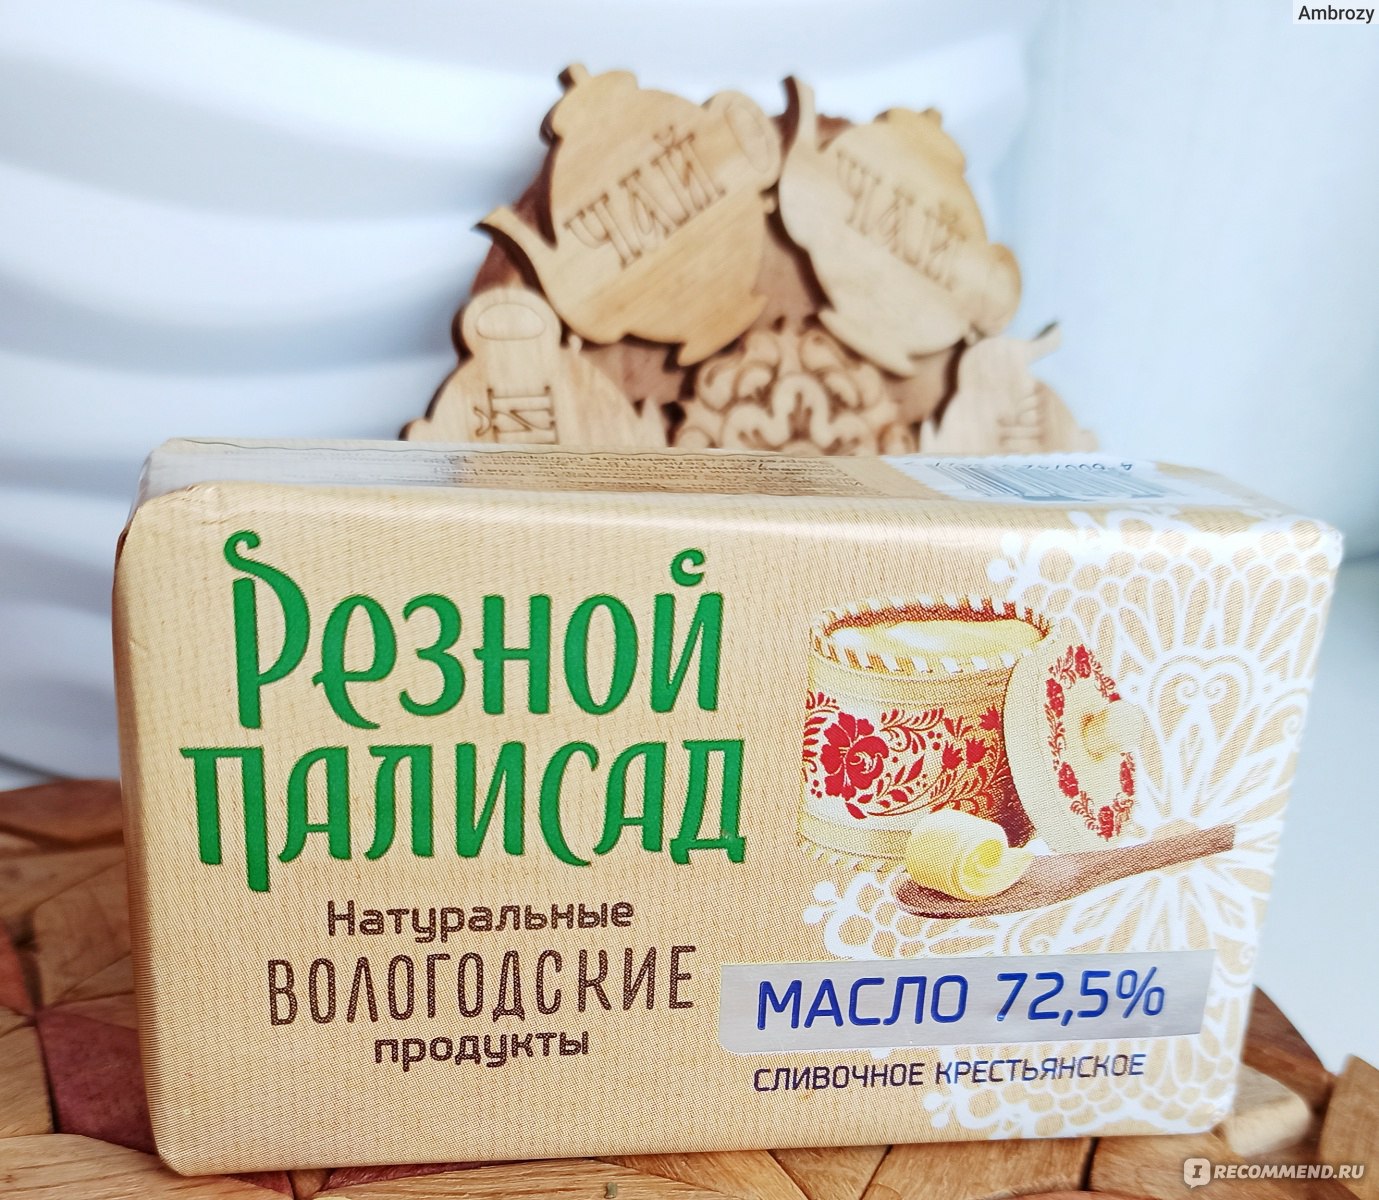 Вологодское Масло В Москве Где Купить